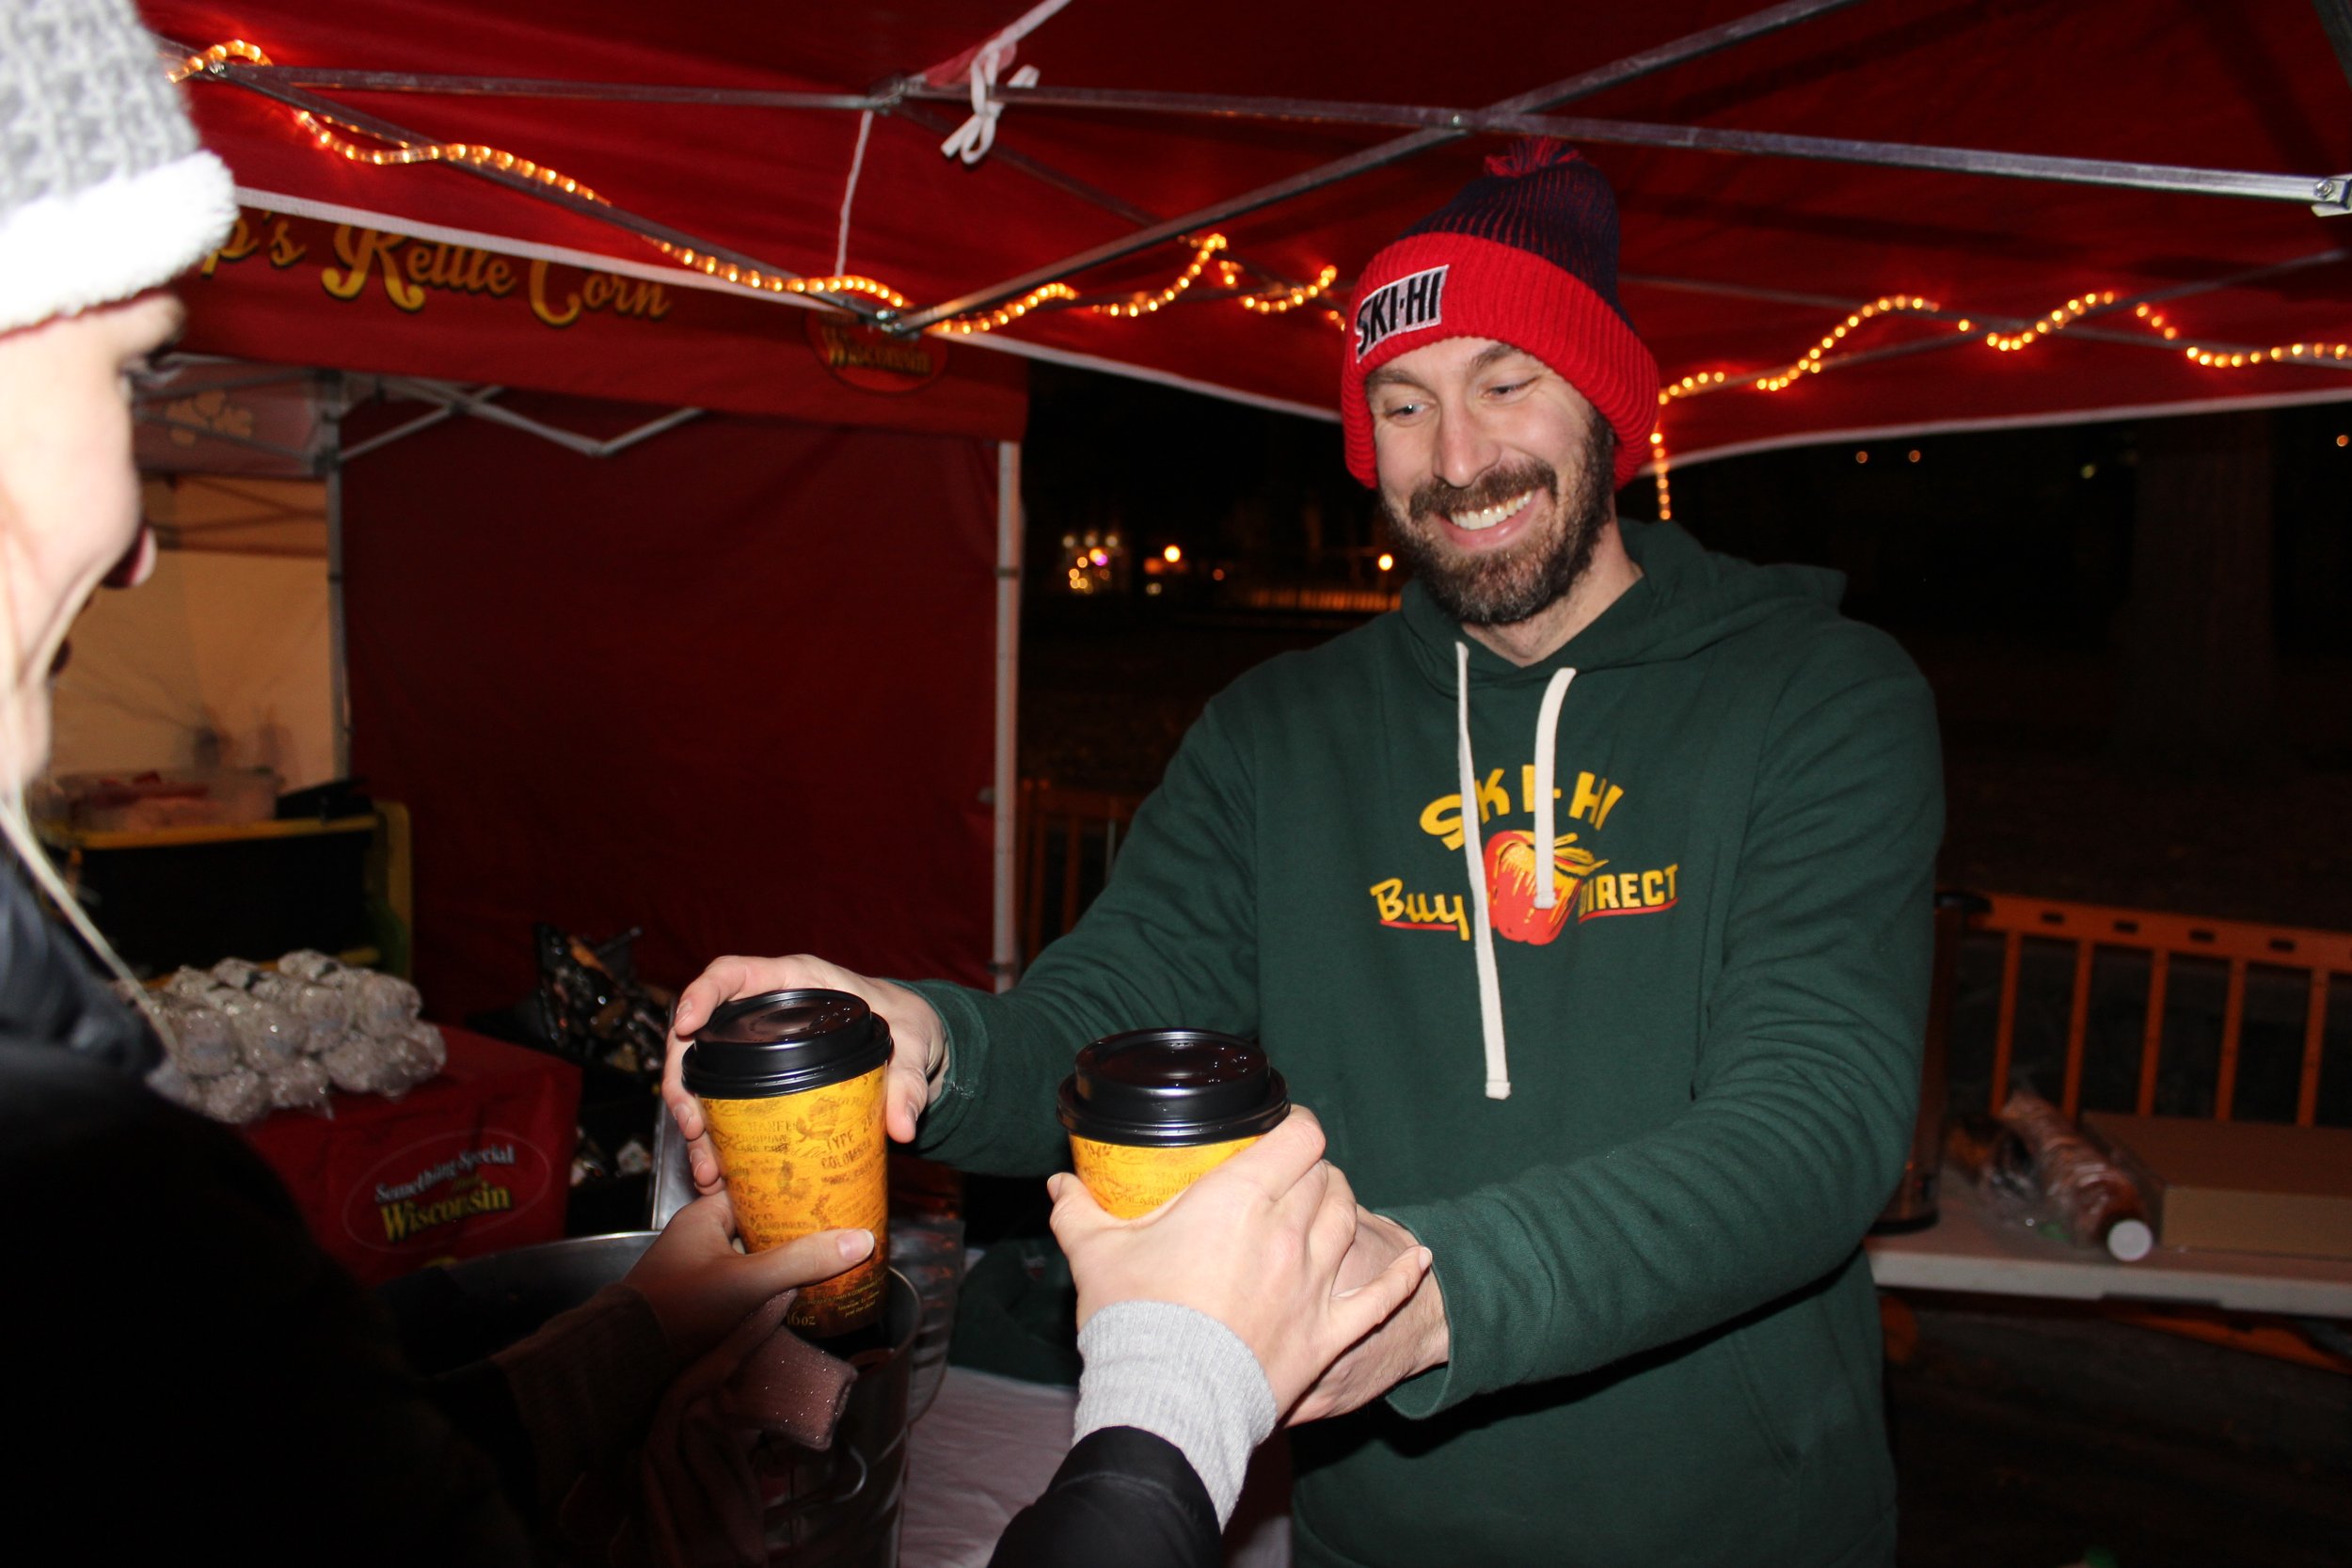  Jake Franzen of Ski Hi Fruit Farm serves cider at a Night Market in December 2019.  Photo by: Ben Bromley 